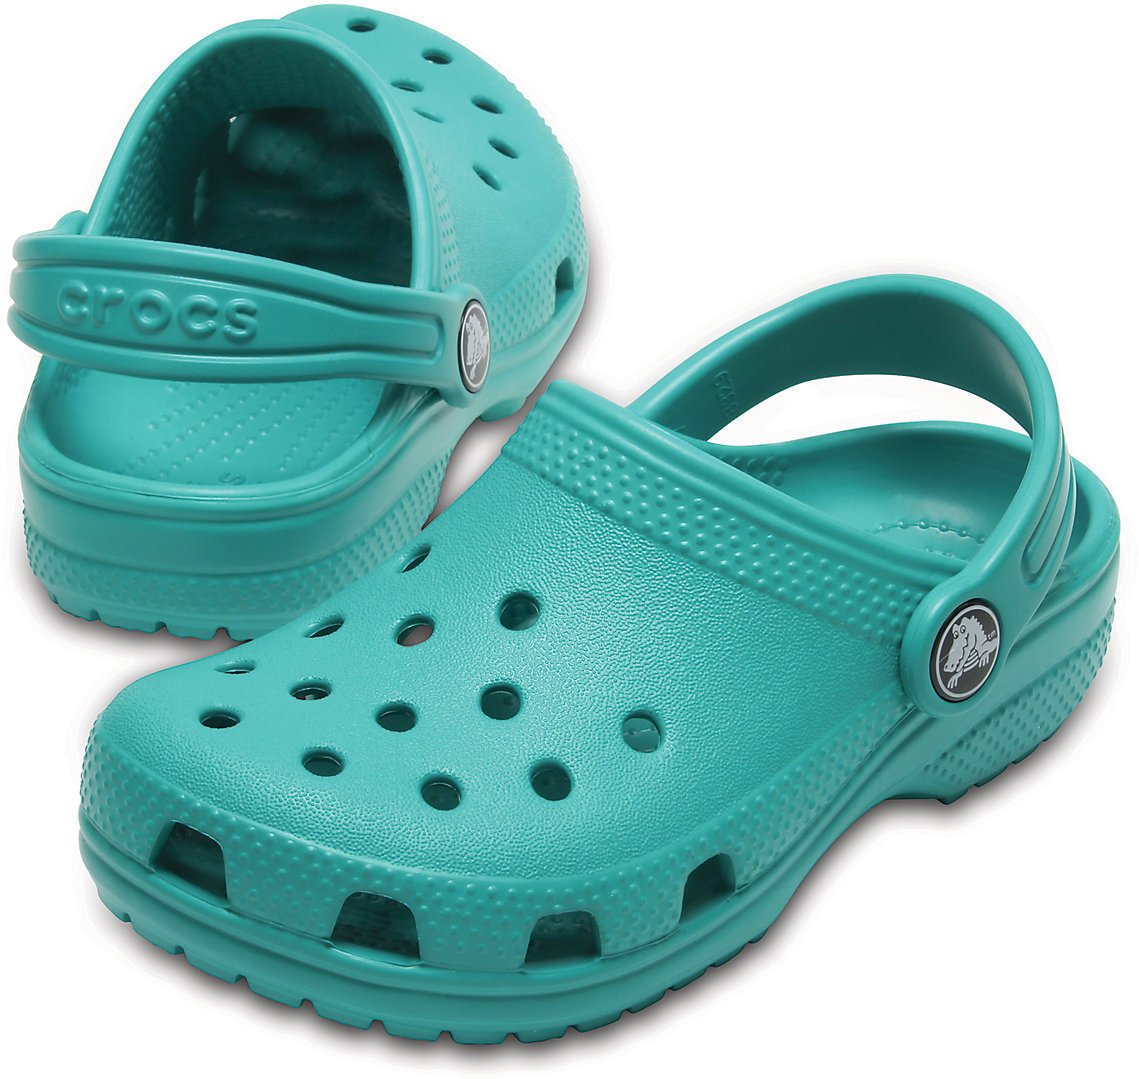 Dječje cipele za jedrenje Crocs Kids' Classic Clog Tropical Teal 20-21